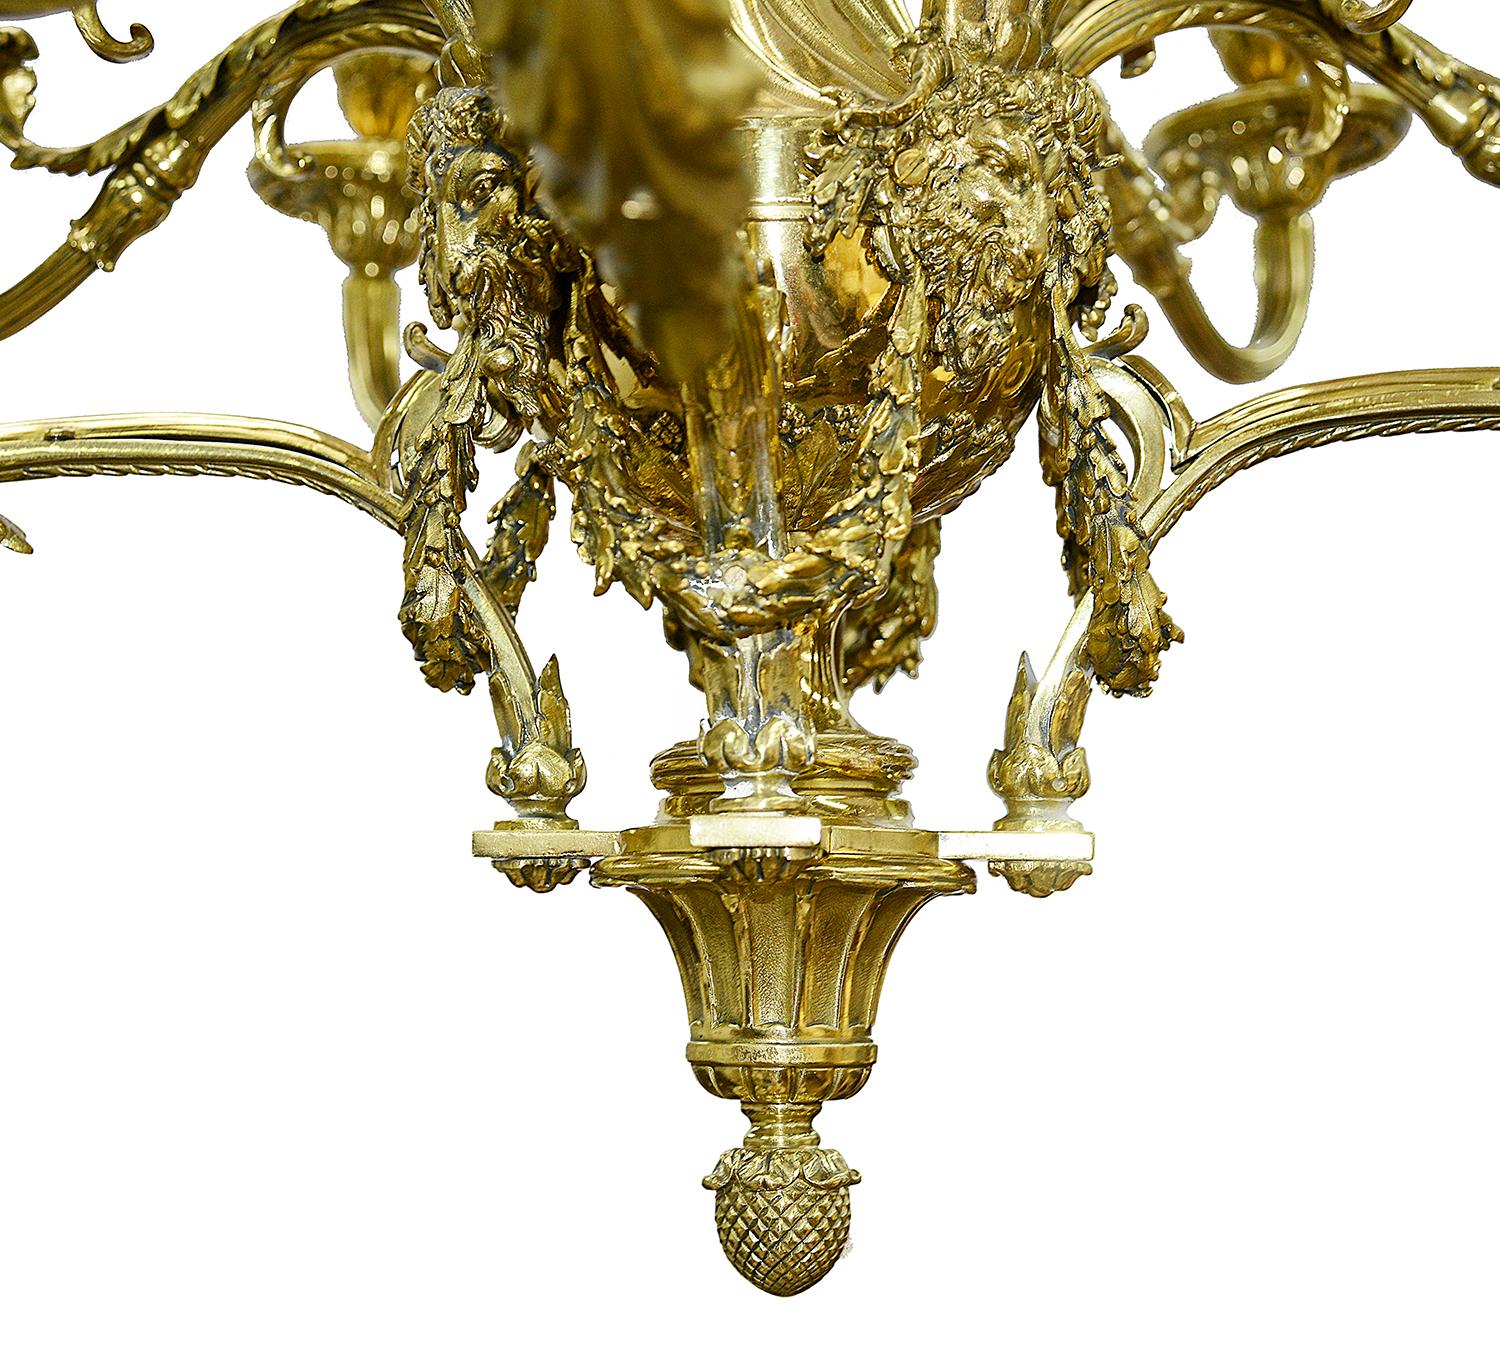 Très impressionnante paire de lustres classiques du XIXe siècle en bronze doré à 20 branches, chacun présentant des décorations en forme de guirlandes, de feuillages et d'enroulements. Les bras balayés en volute sont ornés d'appliques, de têtes de